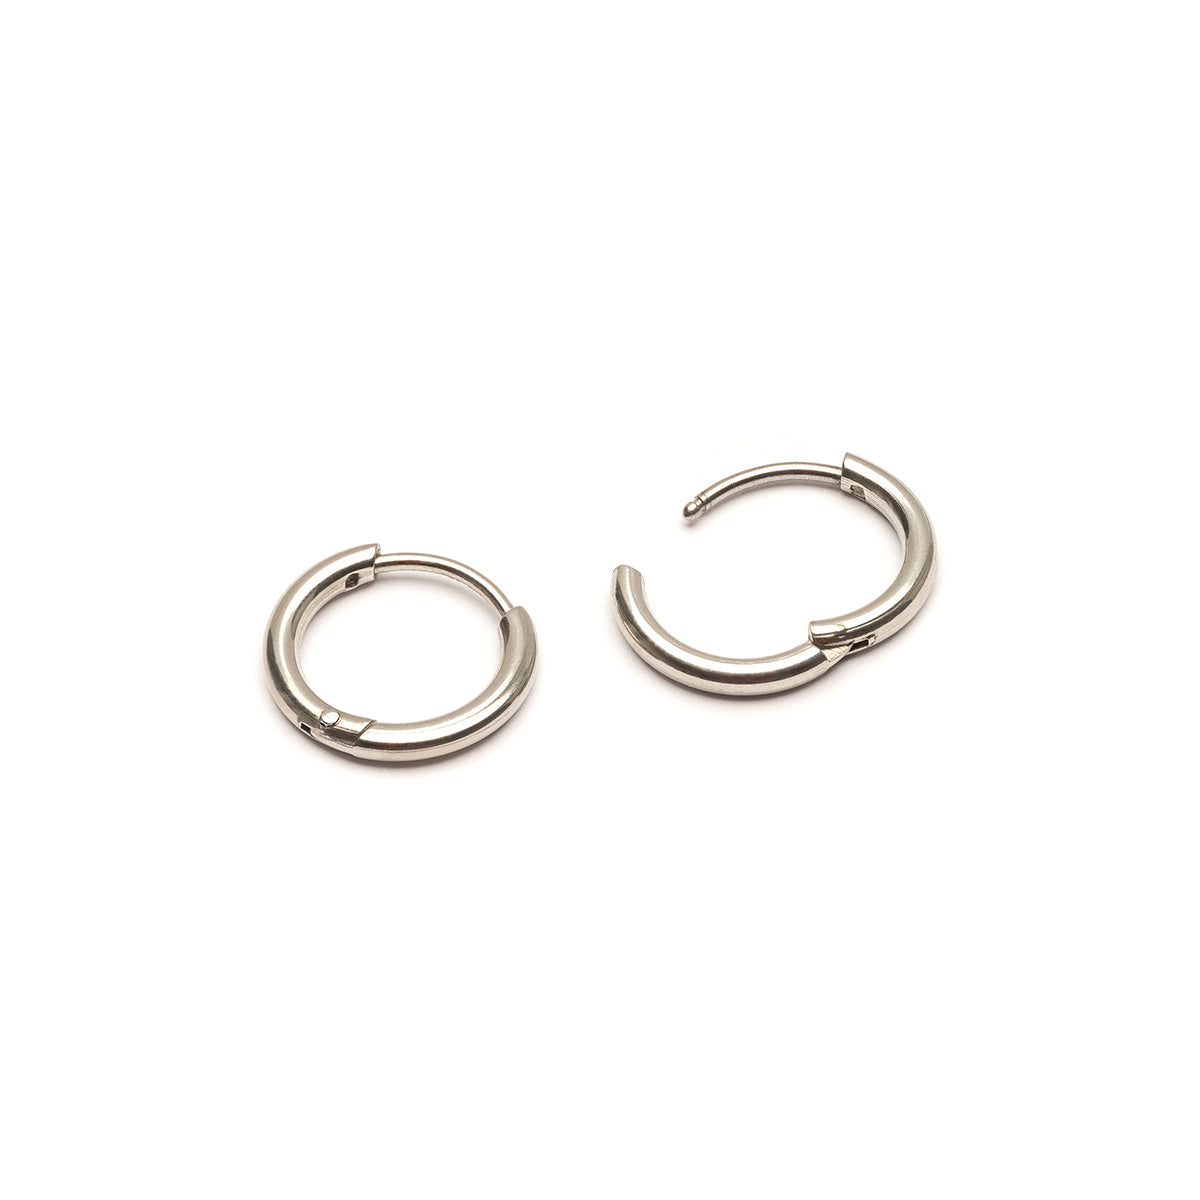 Silver titanium huggie hoop earrings - Simply Whispers